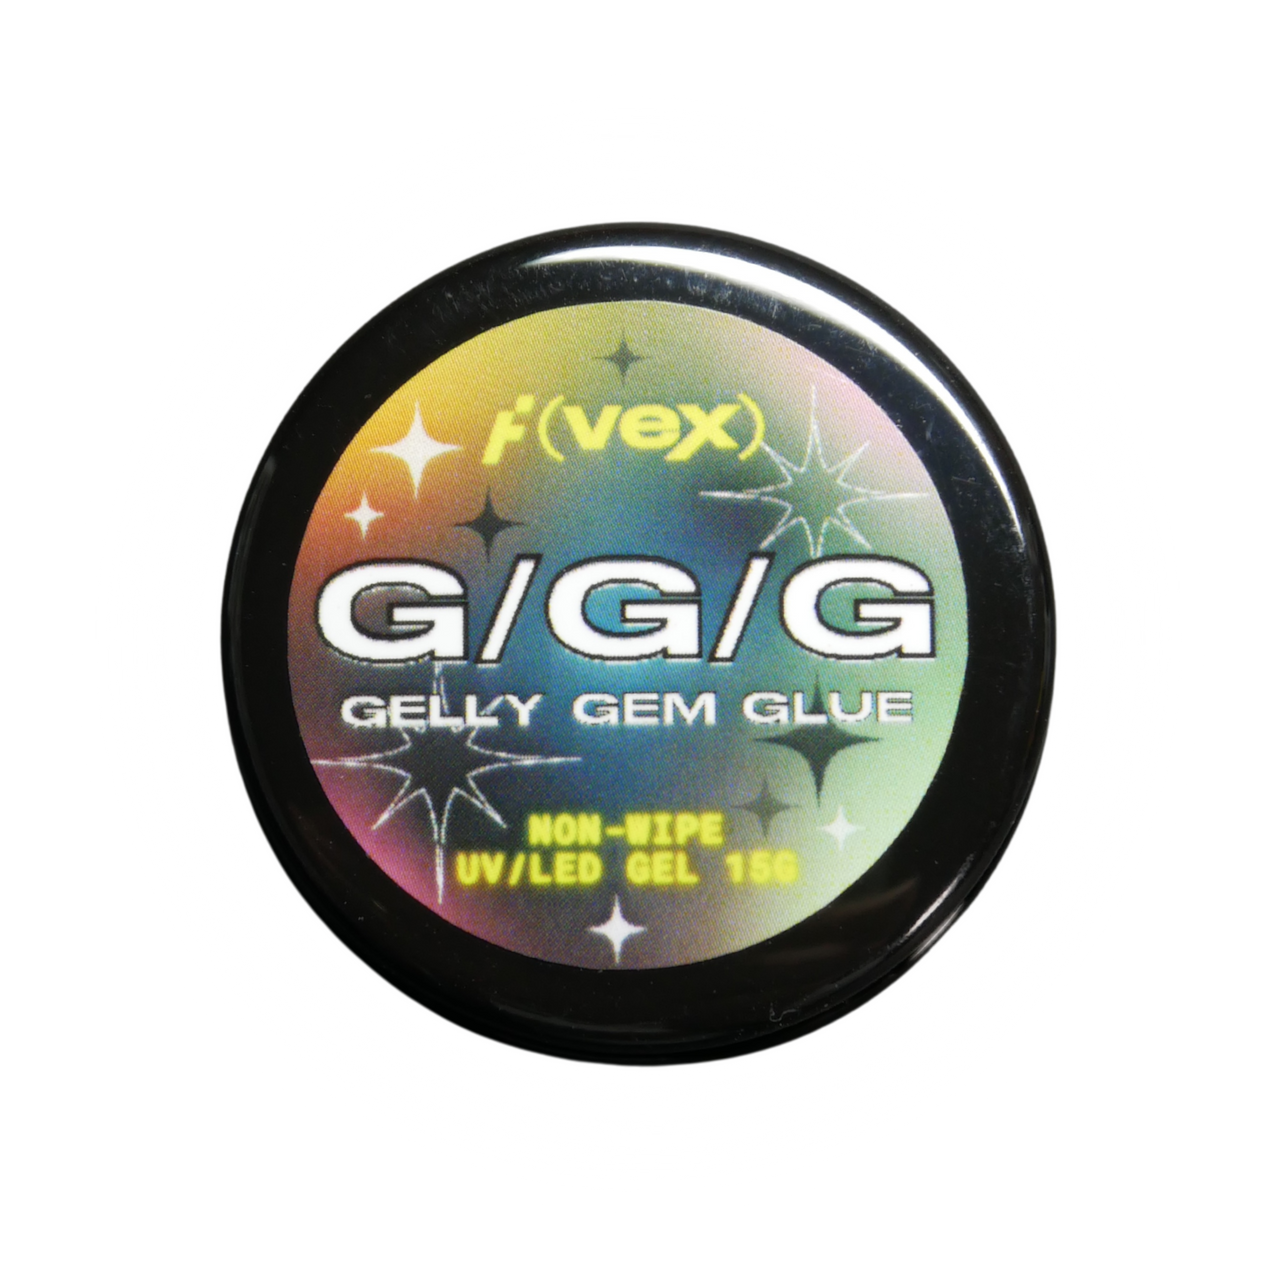 GGG "Gelly Gem Glue"